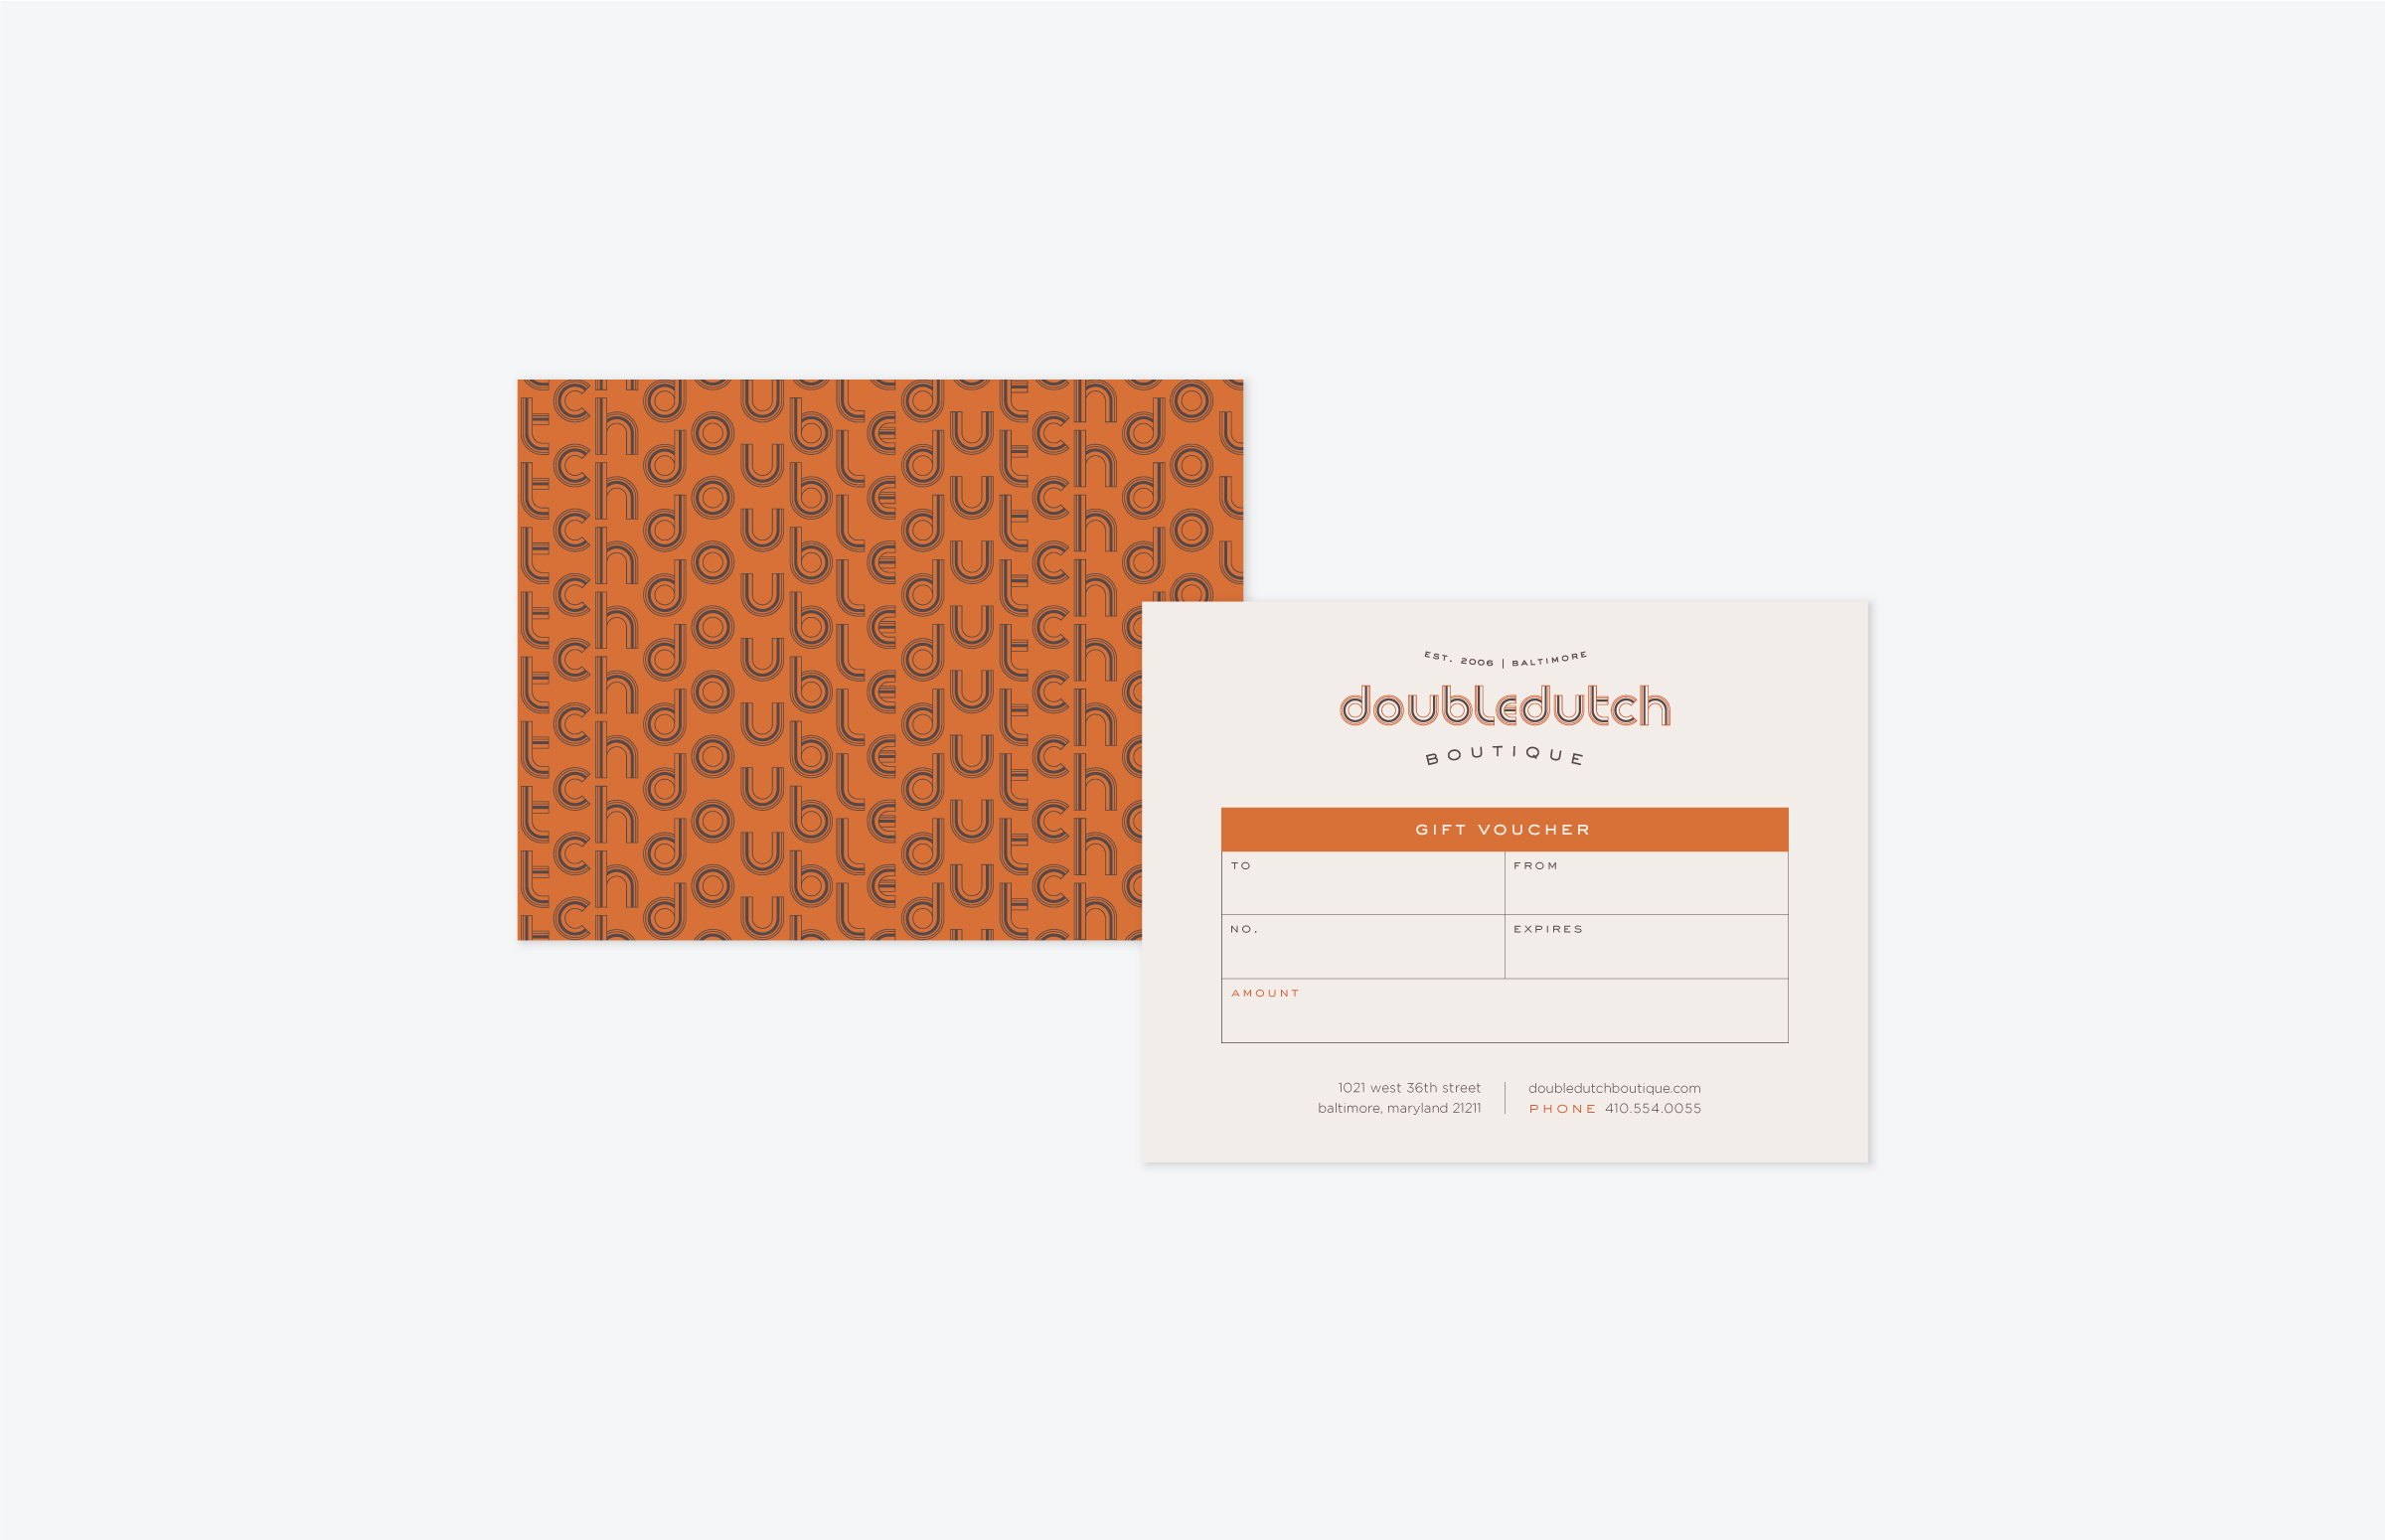 Doubledutch Boutique: Gift Certificate Design